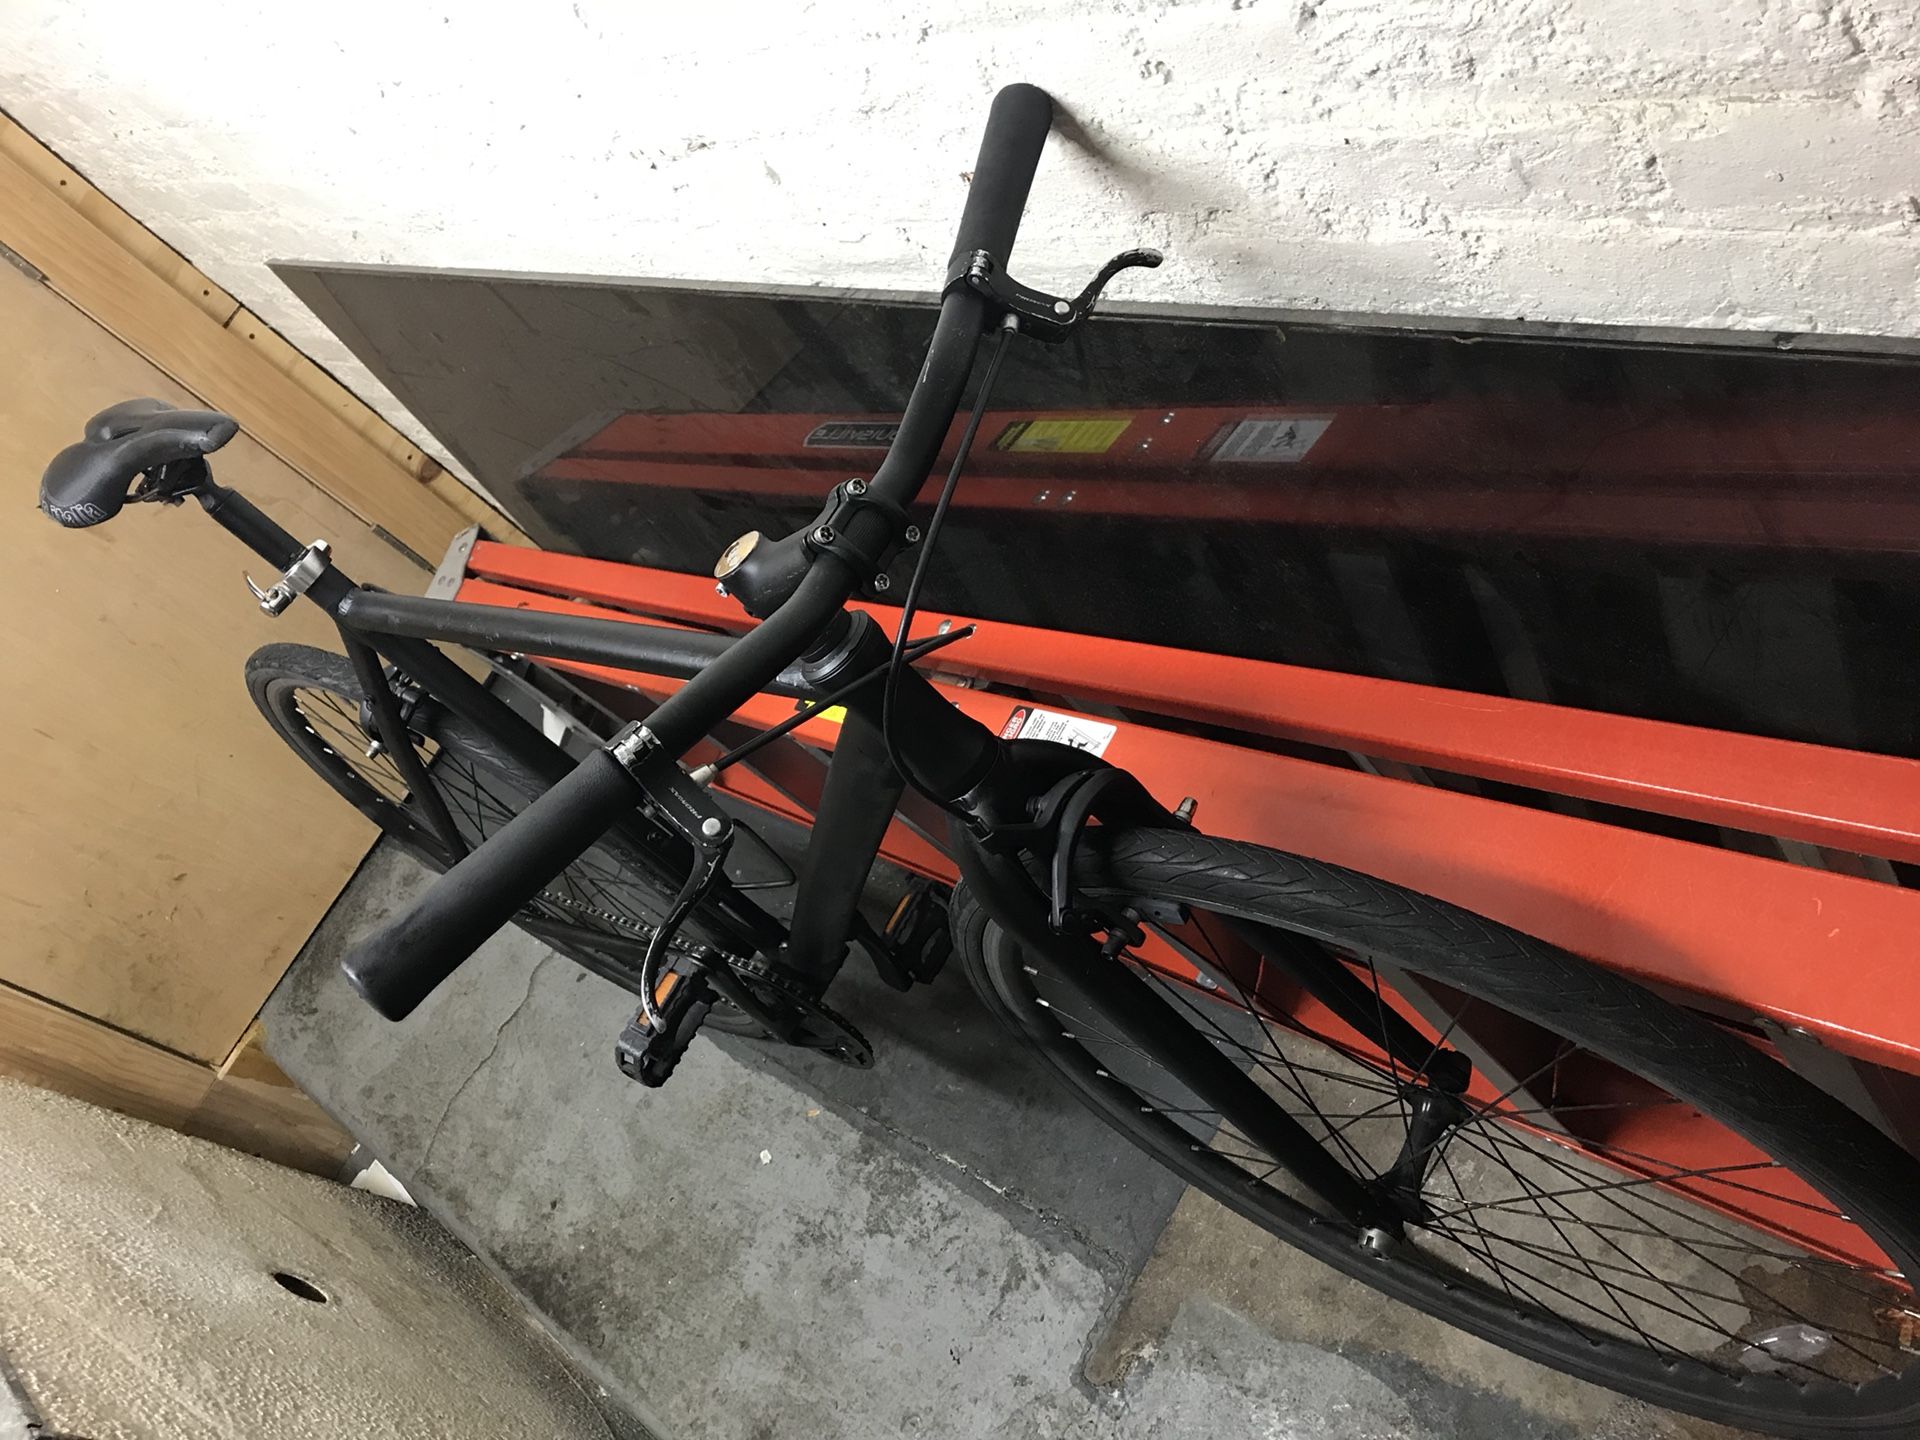 Fixed bike